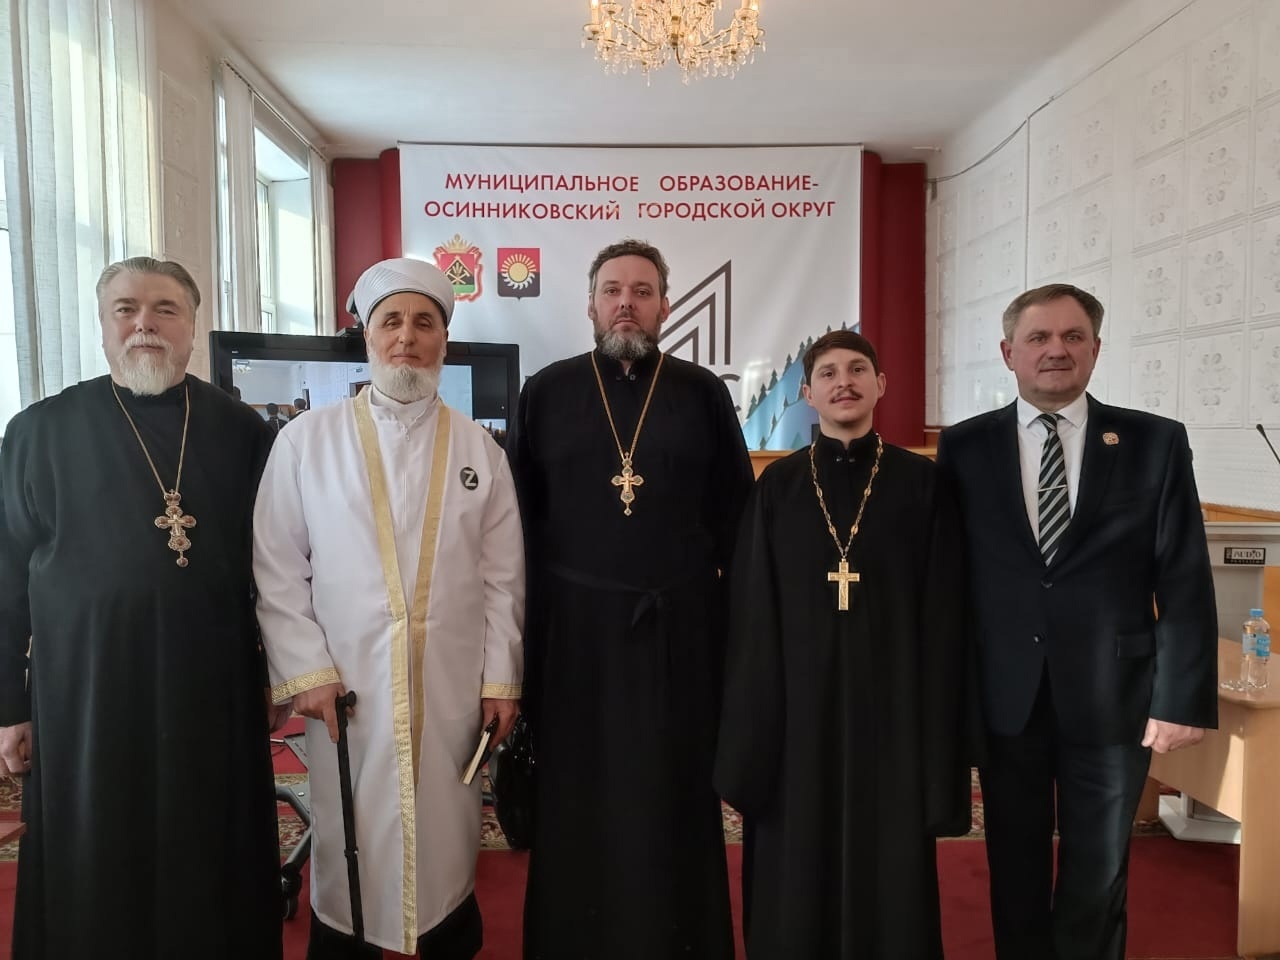  Активное участие религиозных лидеров в социальном развитии Осинниковского округа